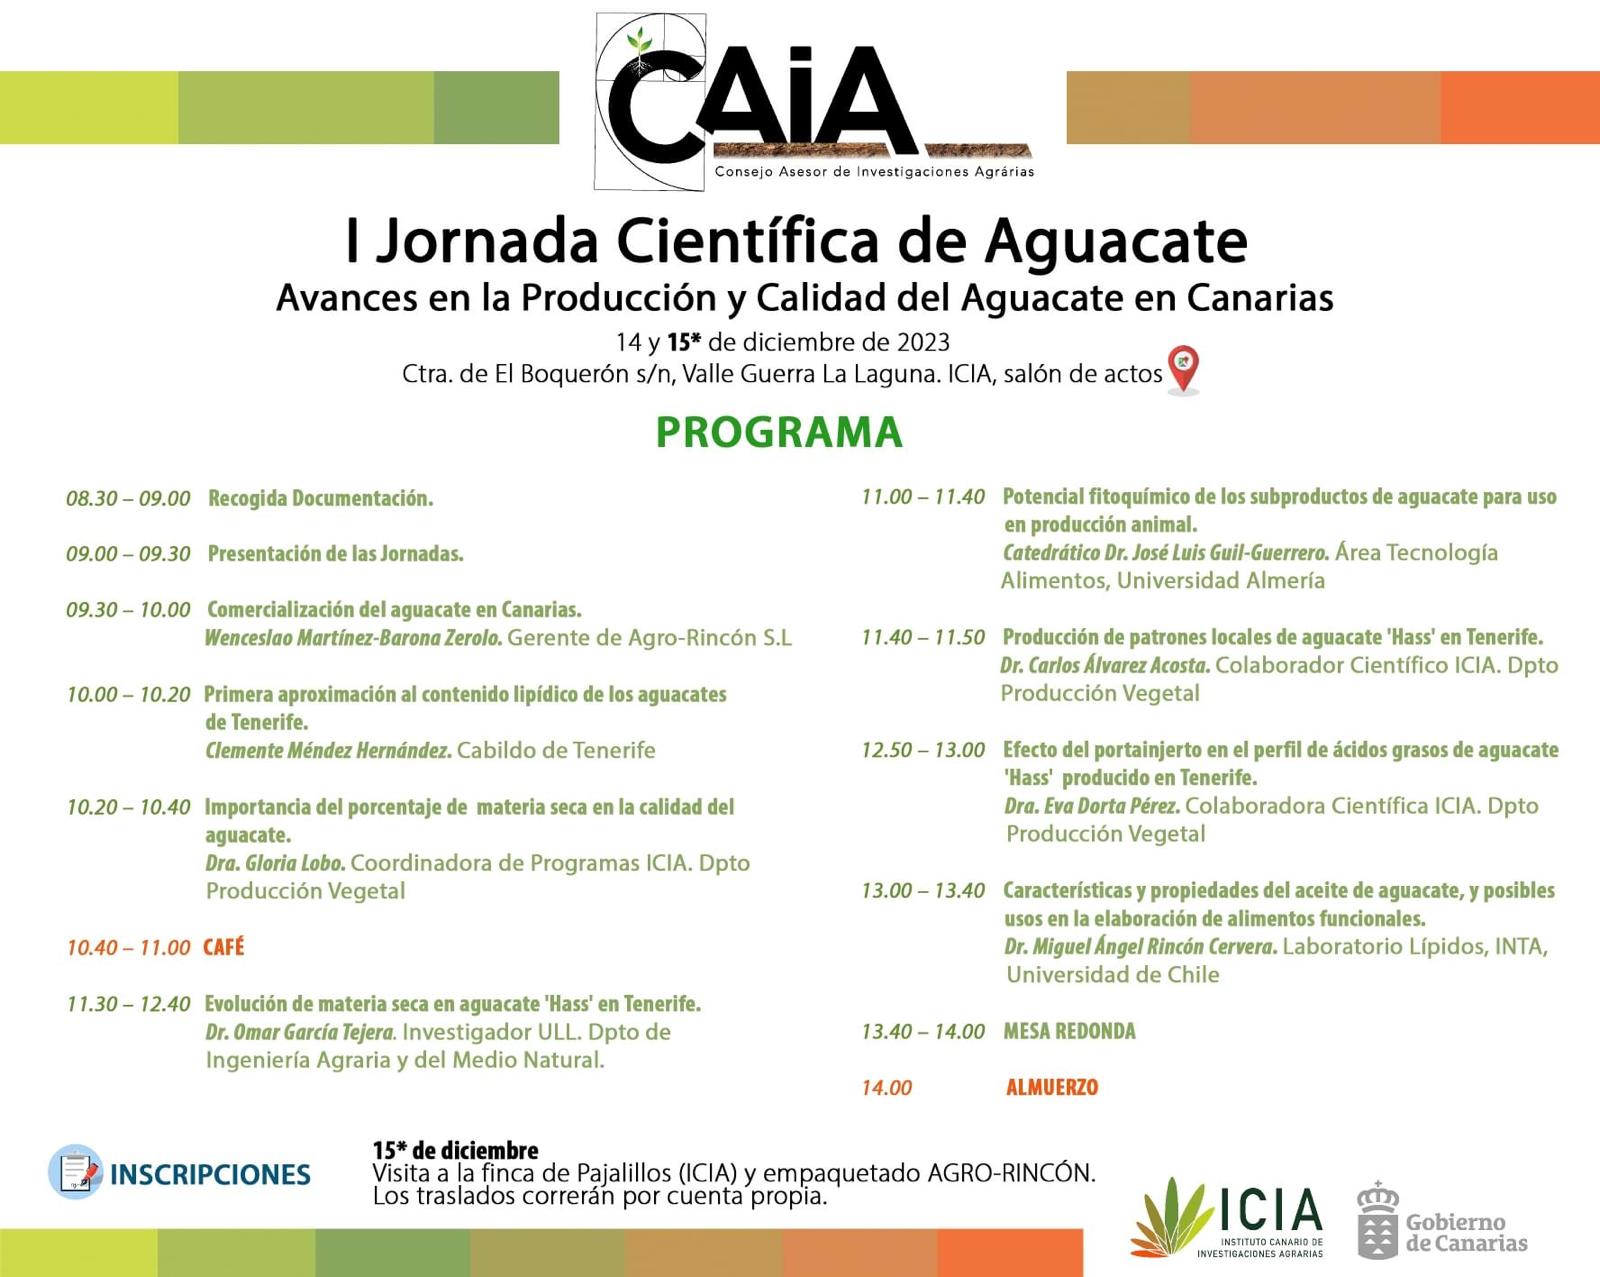 I Jornada Científica de Aguacate. Avances en la producción y calidad del aguacate en Canarias